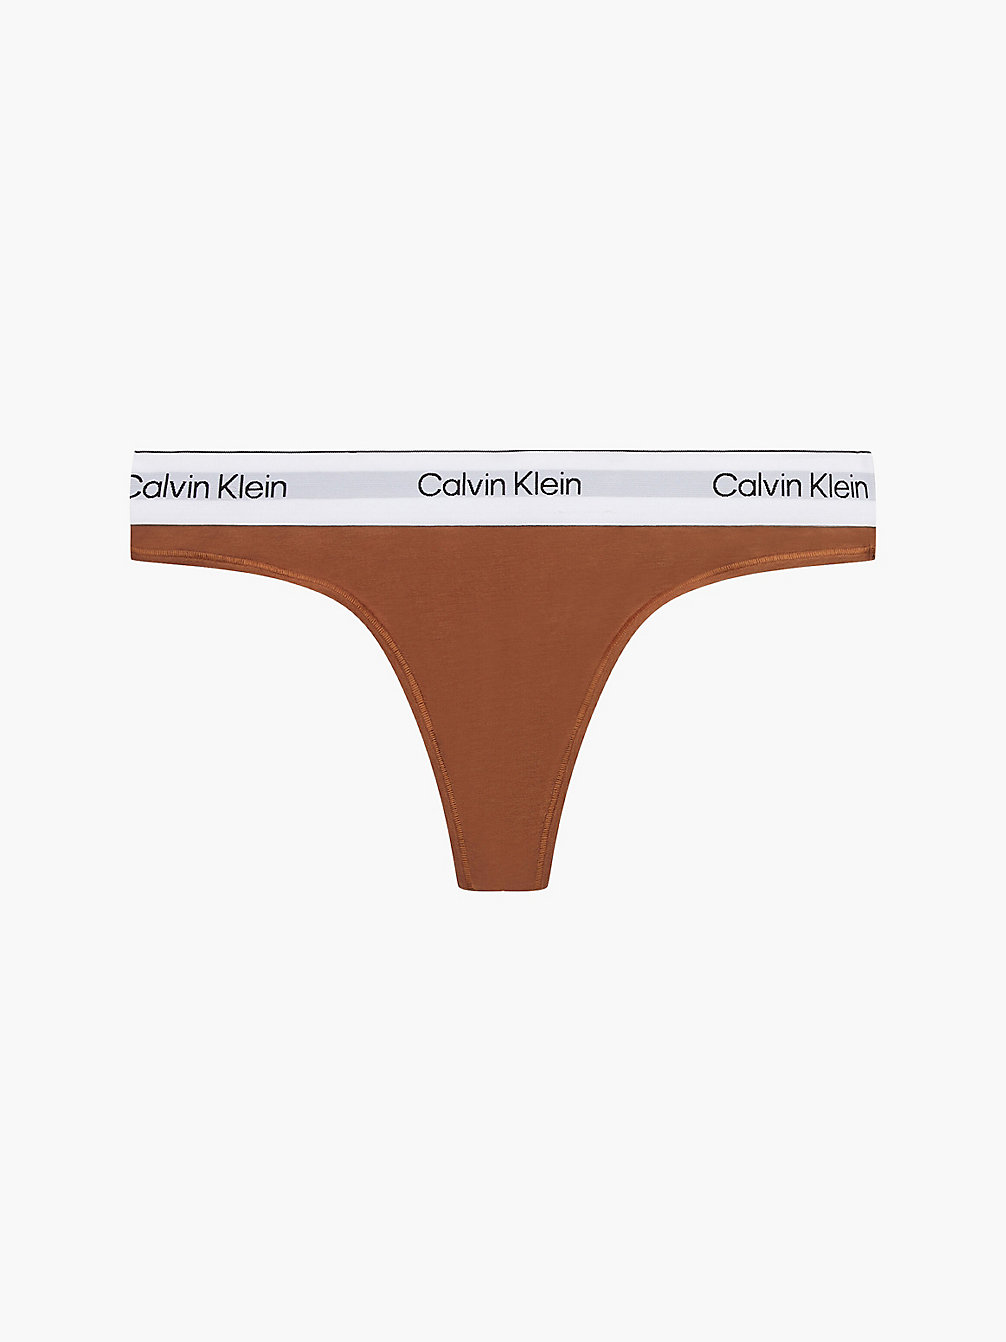 WARM BRONZE > String – Modern Cotton > undefined Damen - Calvin Klein